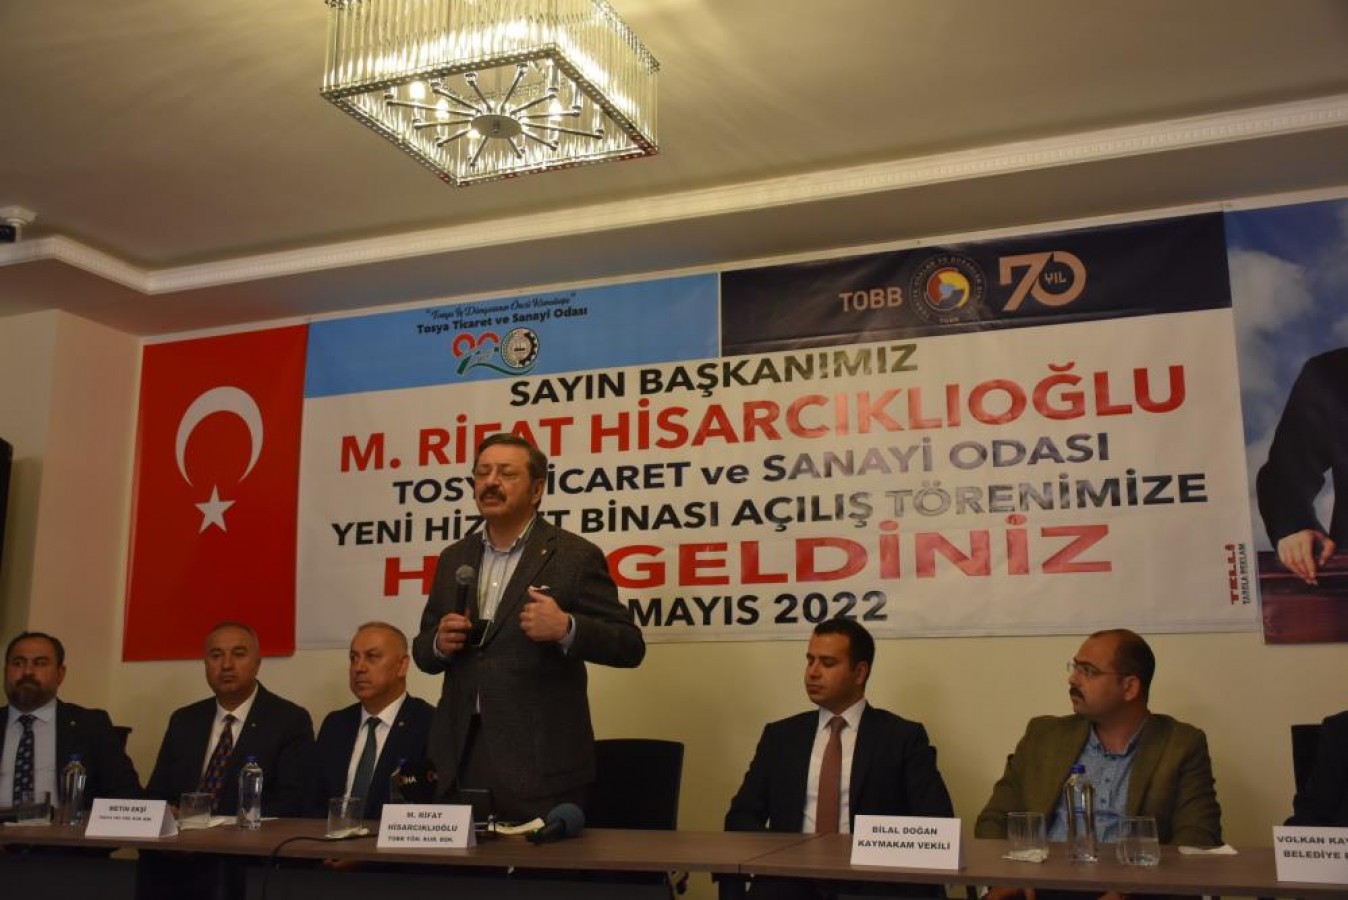 Hisarcıklıoğlu, Tosya'da konuştu;